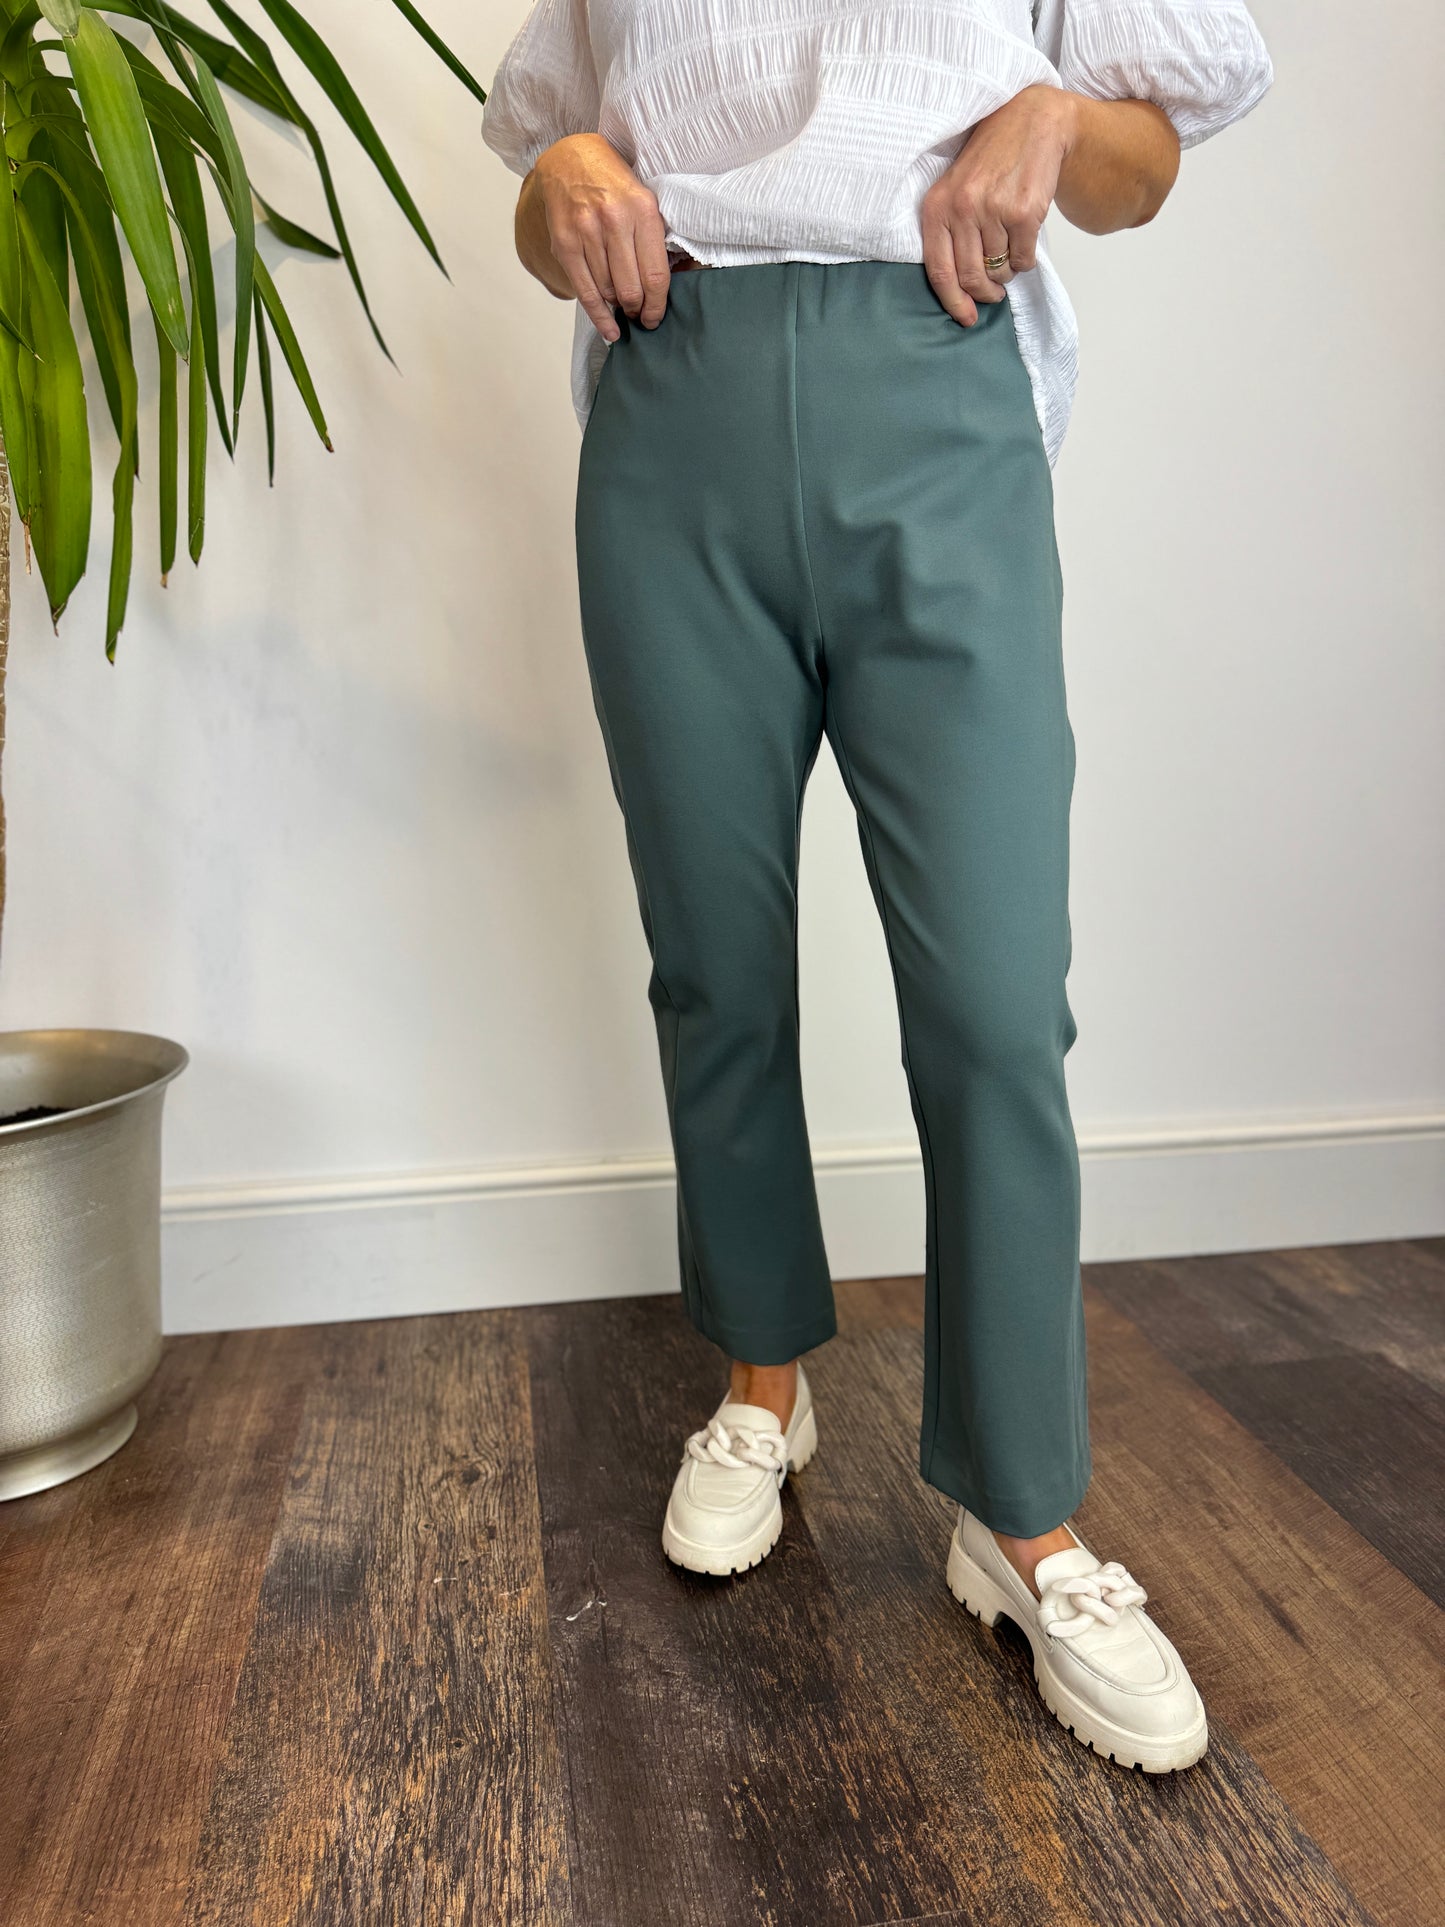 MaPaba Balsam Green Trouser